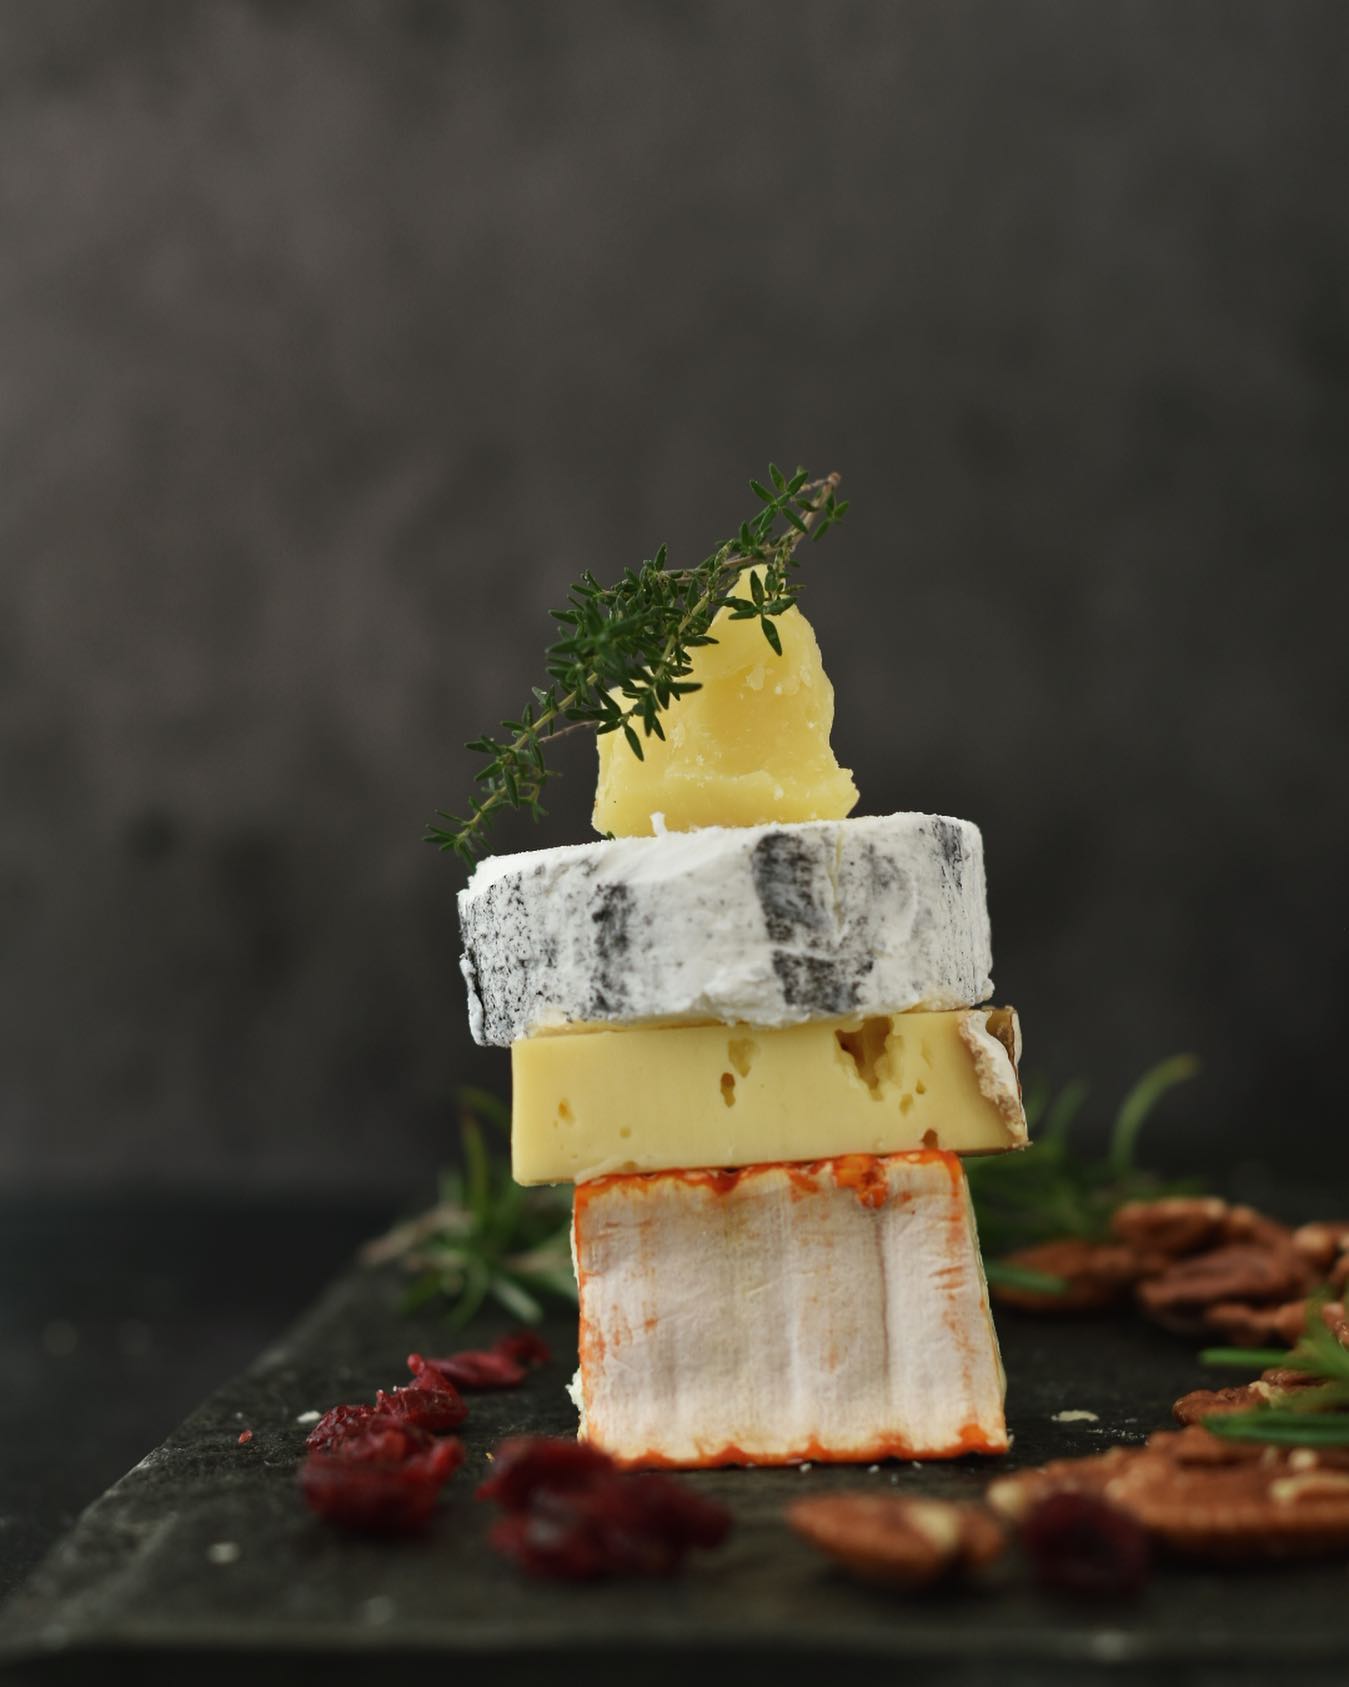 FASCINATED BY DIVERSITY

Er det ikke utroligt, at alle oste stort set er lavet af de samme ingredienser: Mælk, salt, osteløbe, mælkesyrekultur og måske lidt flere bakterier? Og nok gså lidt kærlighed, passion og knowhow. 
.
.
.

#ostesnak #cheesetalks #cheese #cheeseislife #cheeselovers #instacheese #cheeseplease #ost #cheeseblogger #foodie #fromage #cheeseblog #foodstylist #cheesephoto #cheesephotography 
#onmytable #onmyplate #cheeseplate #cheeseplatter #ostebord #ostebræt #cheeseboard